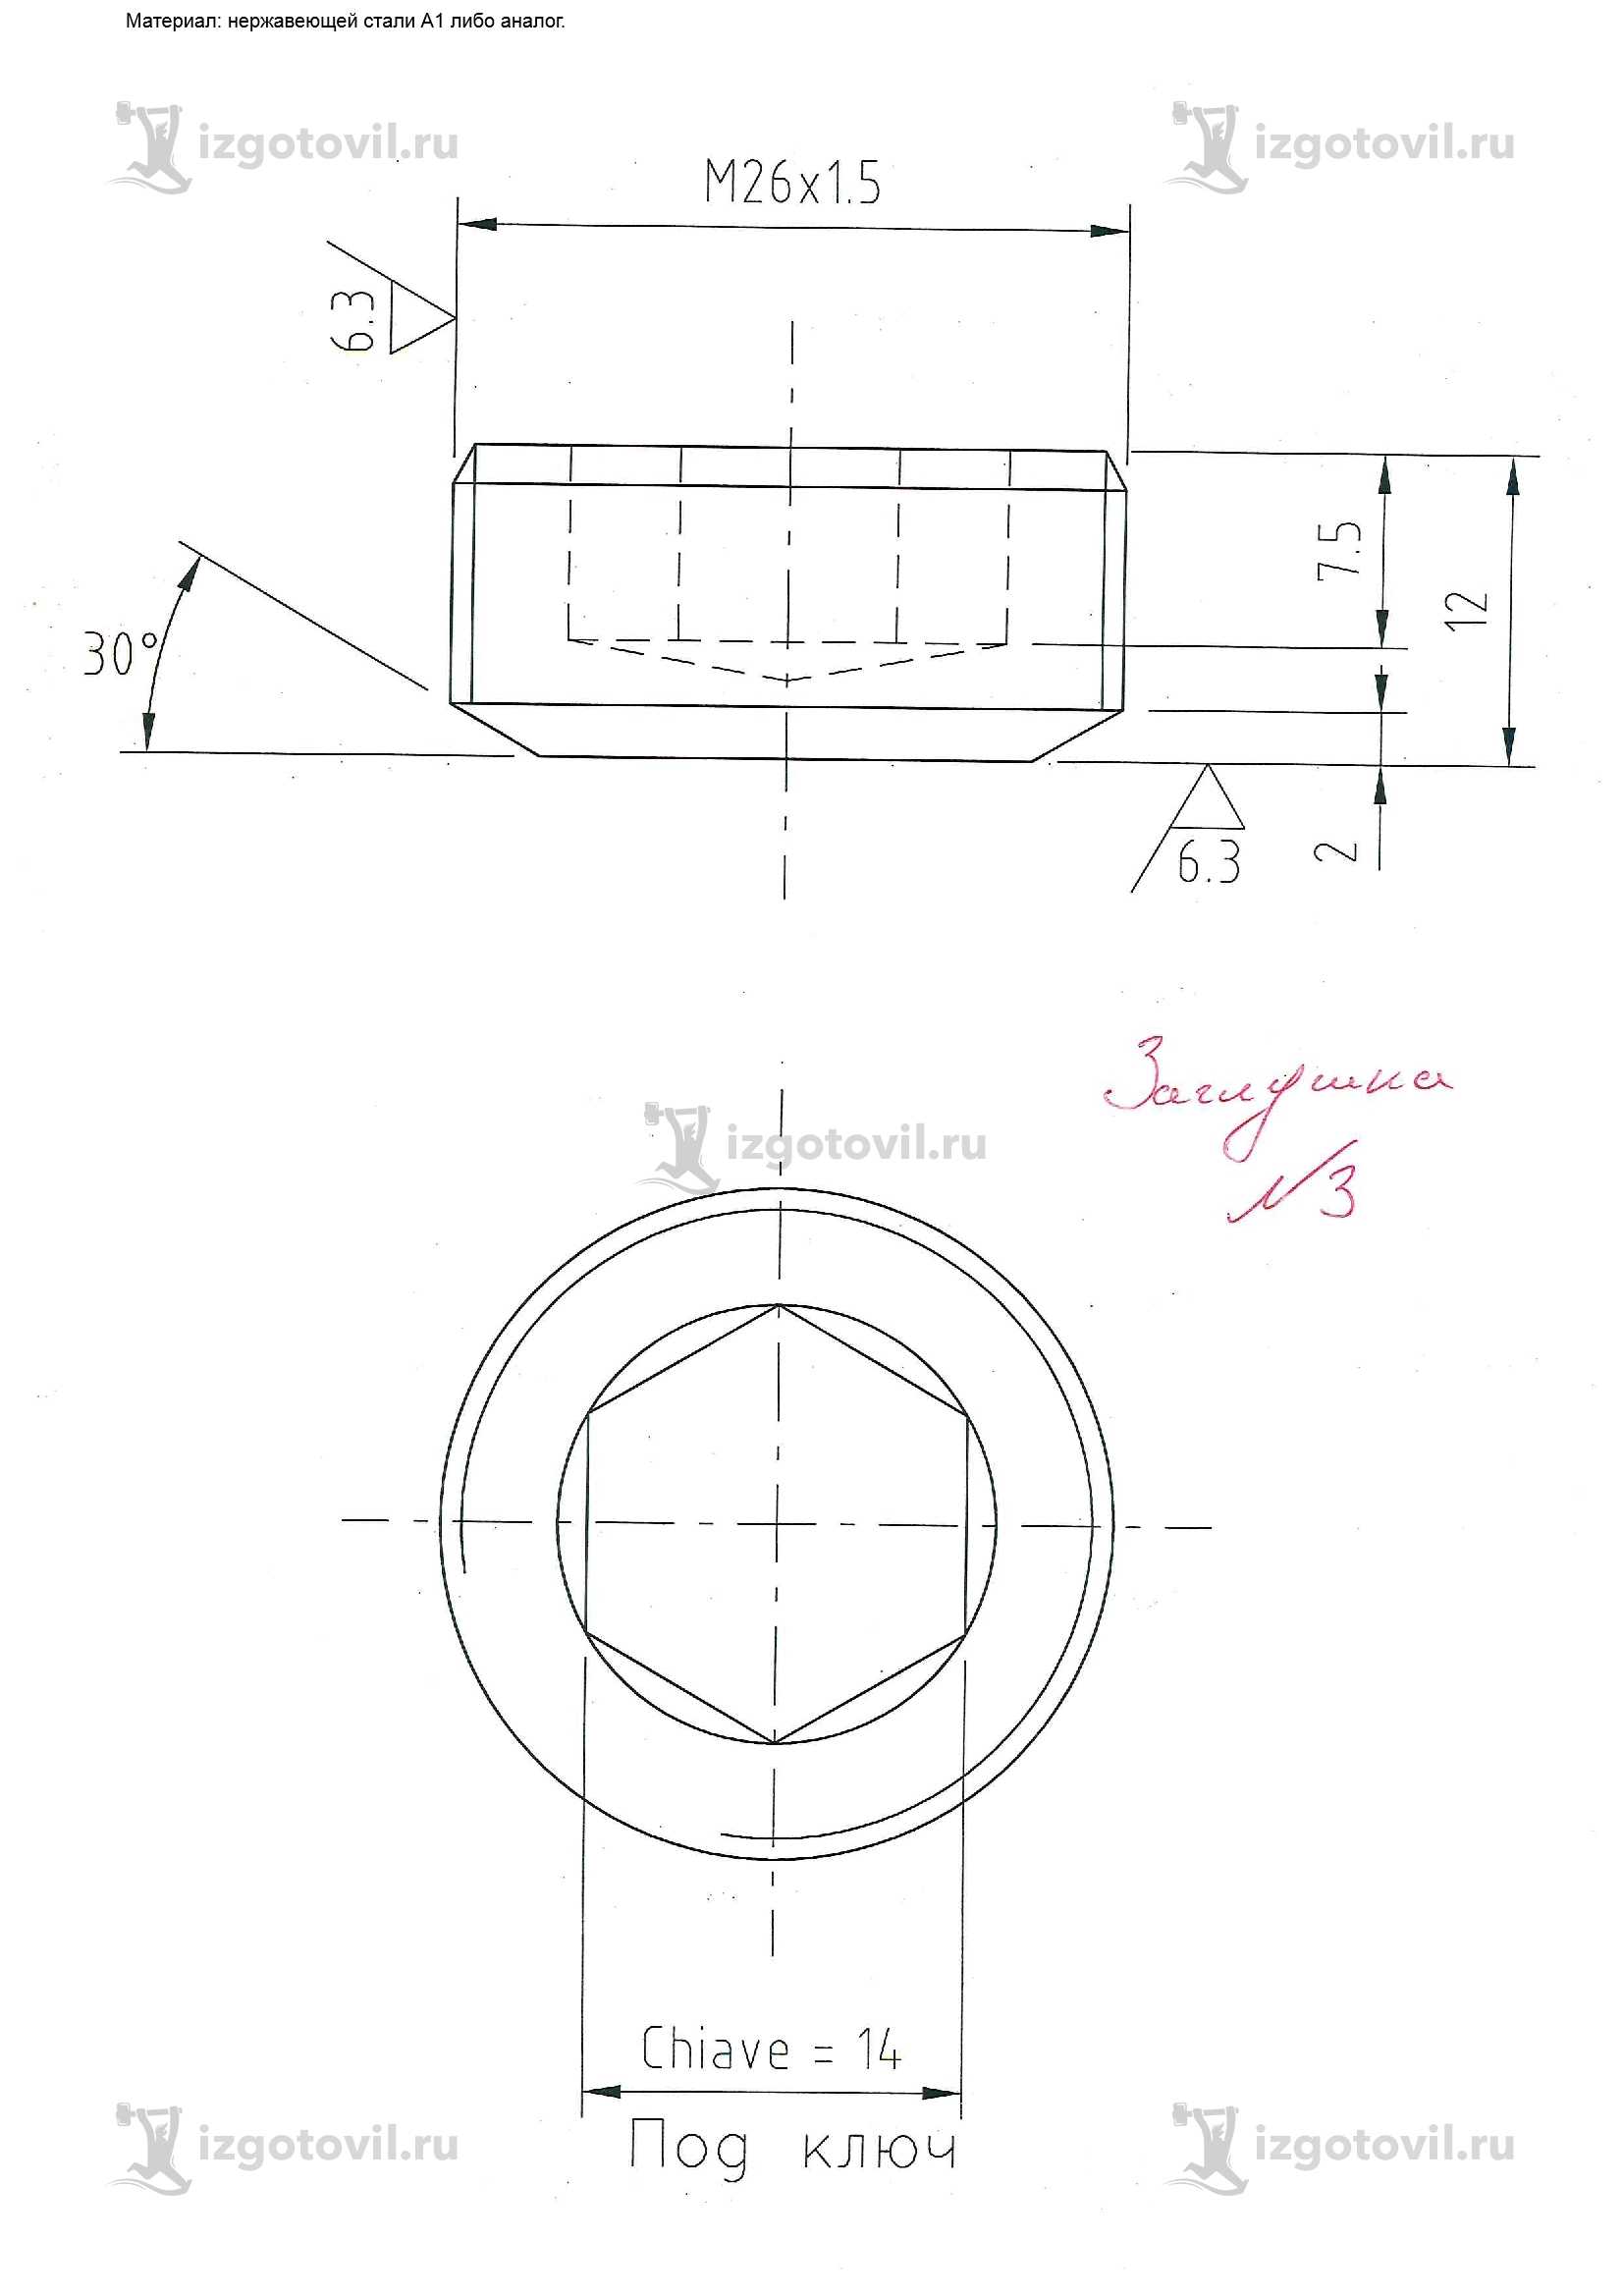 Токарная обработка деталей: изготовление заглушек и колец